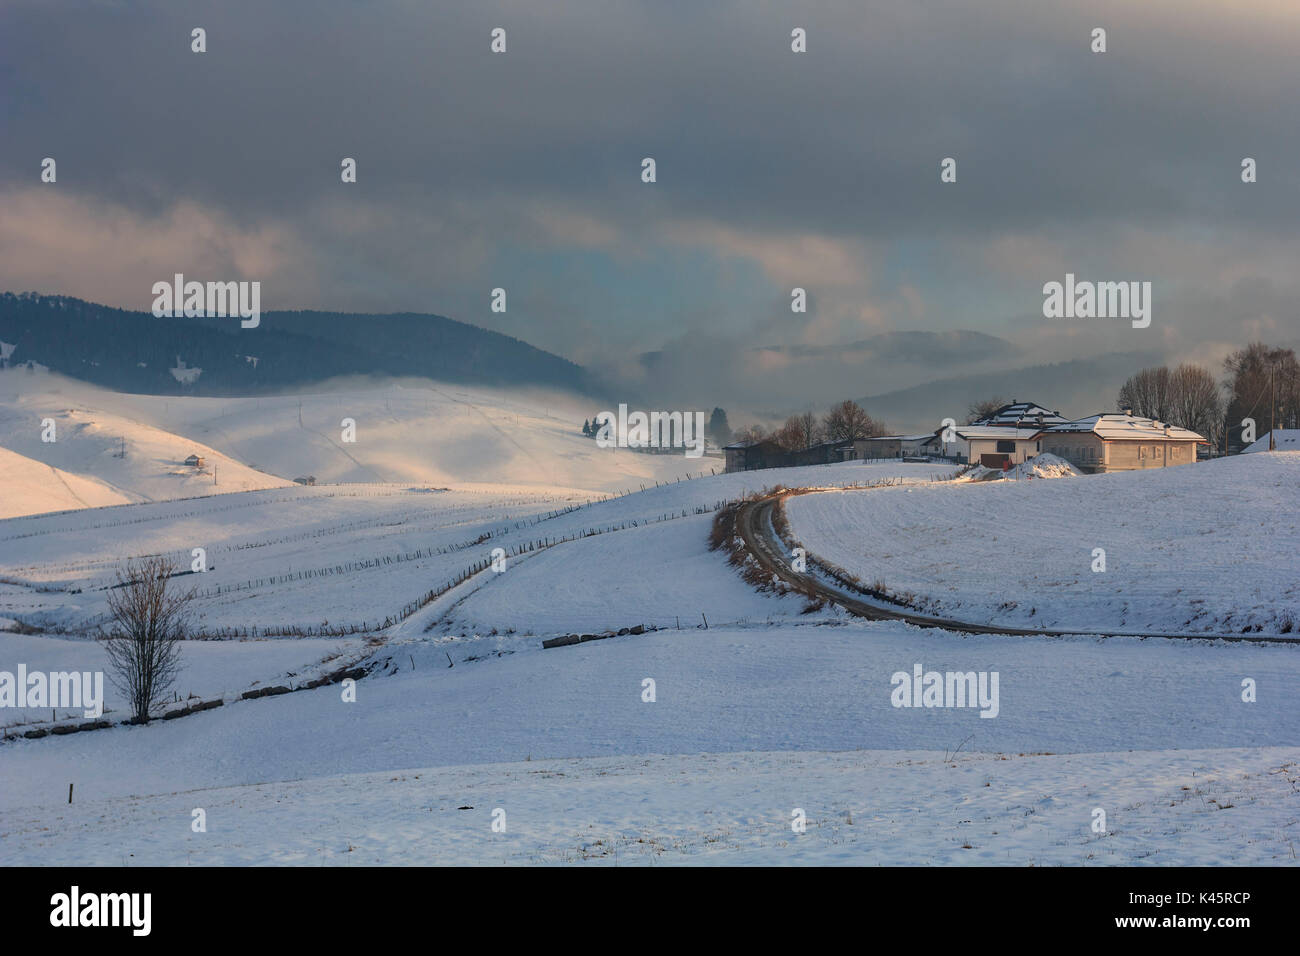 Agriturismi, Altopiano di Asiago, provincia di Vicenza, Italia, Europa. Agriturismi in inverno la neve e nebbia. Foto Stock